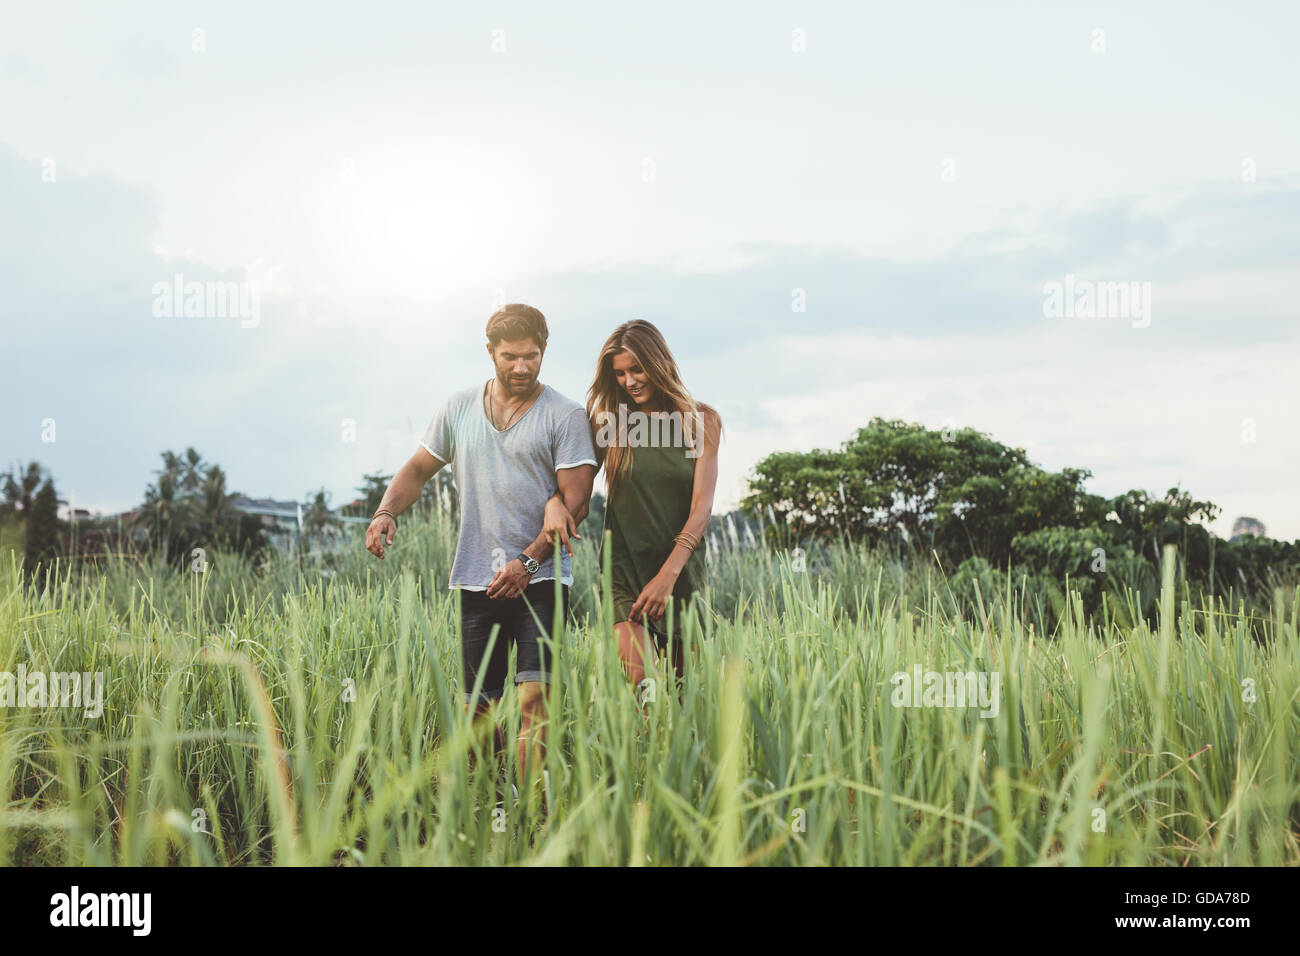 Im Freien Schuss des jungen Paares zu Fuß durch die Wiese. Mann und Frau, Wandern in der Natur. Stockfoto